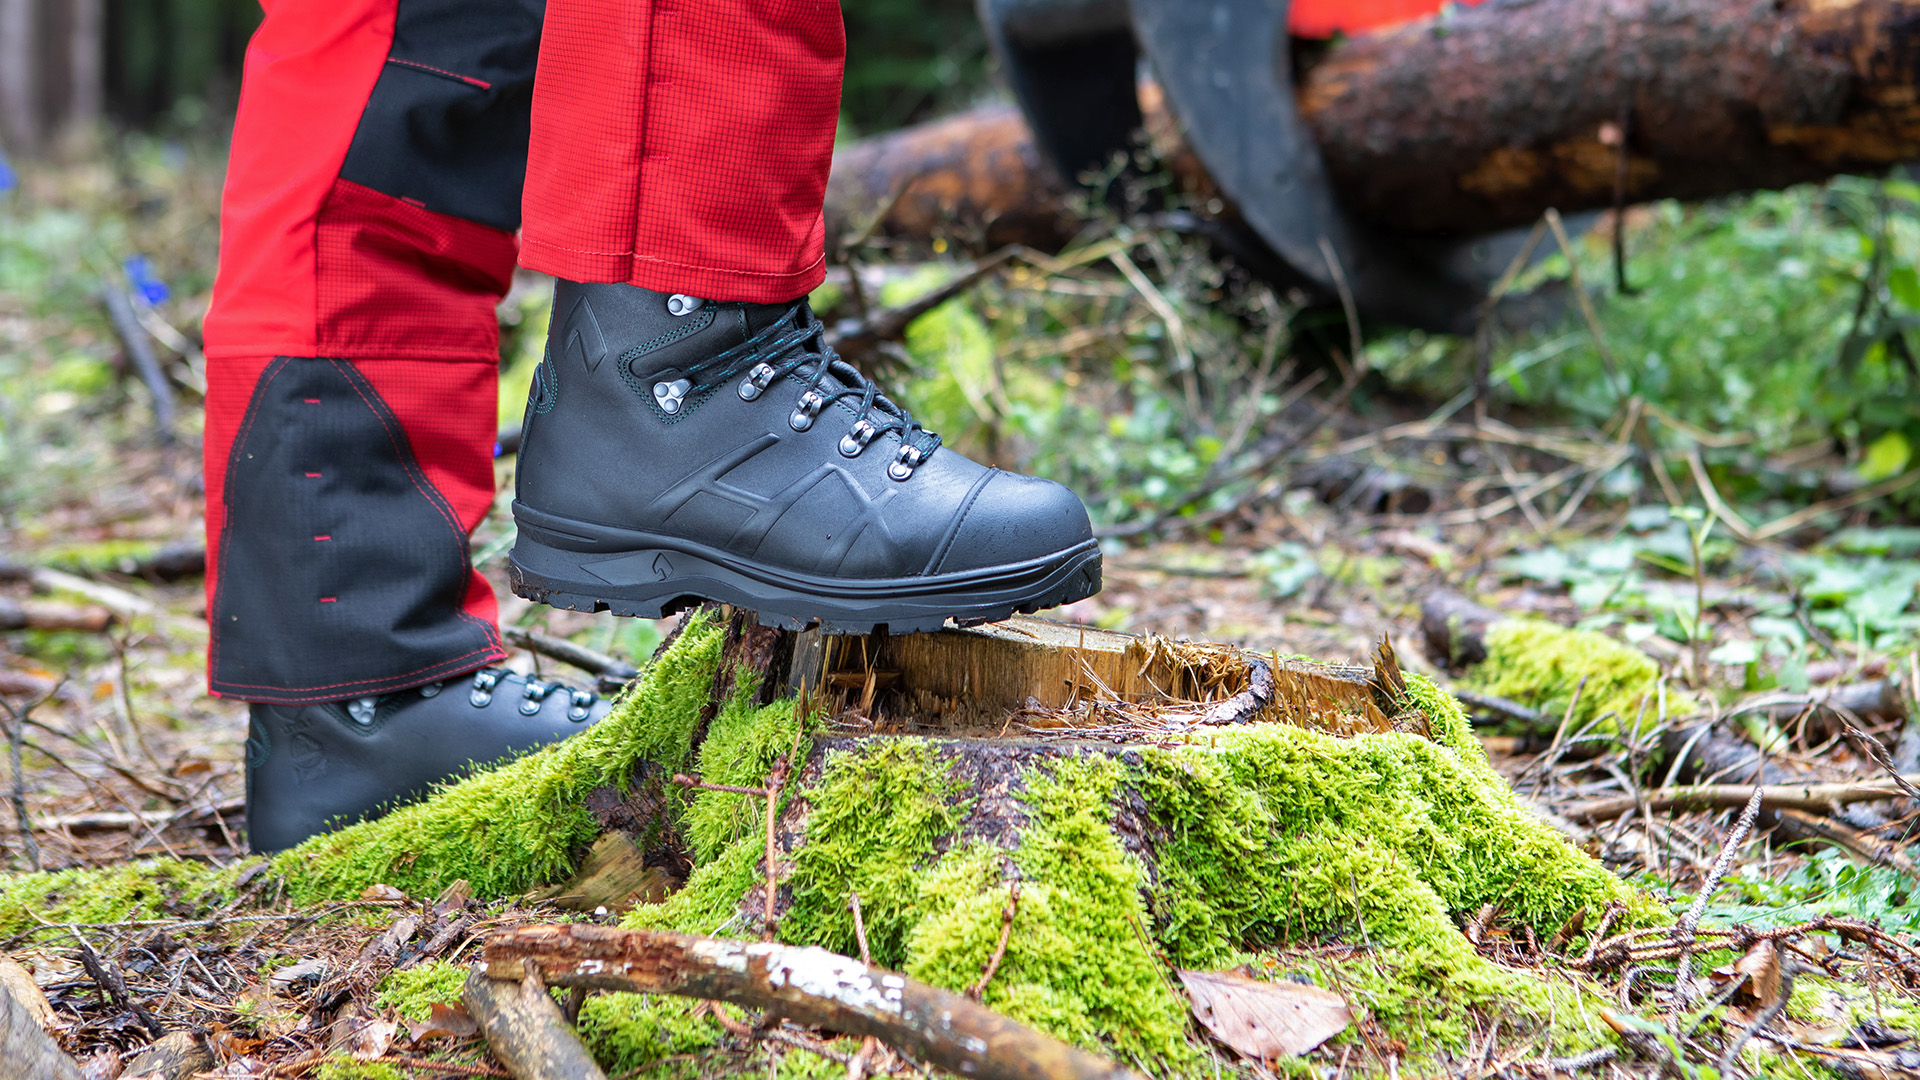 HAIX Protector Pro 2.0, Les bottes professionelles pour le secteur forestier